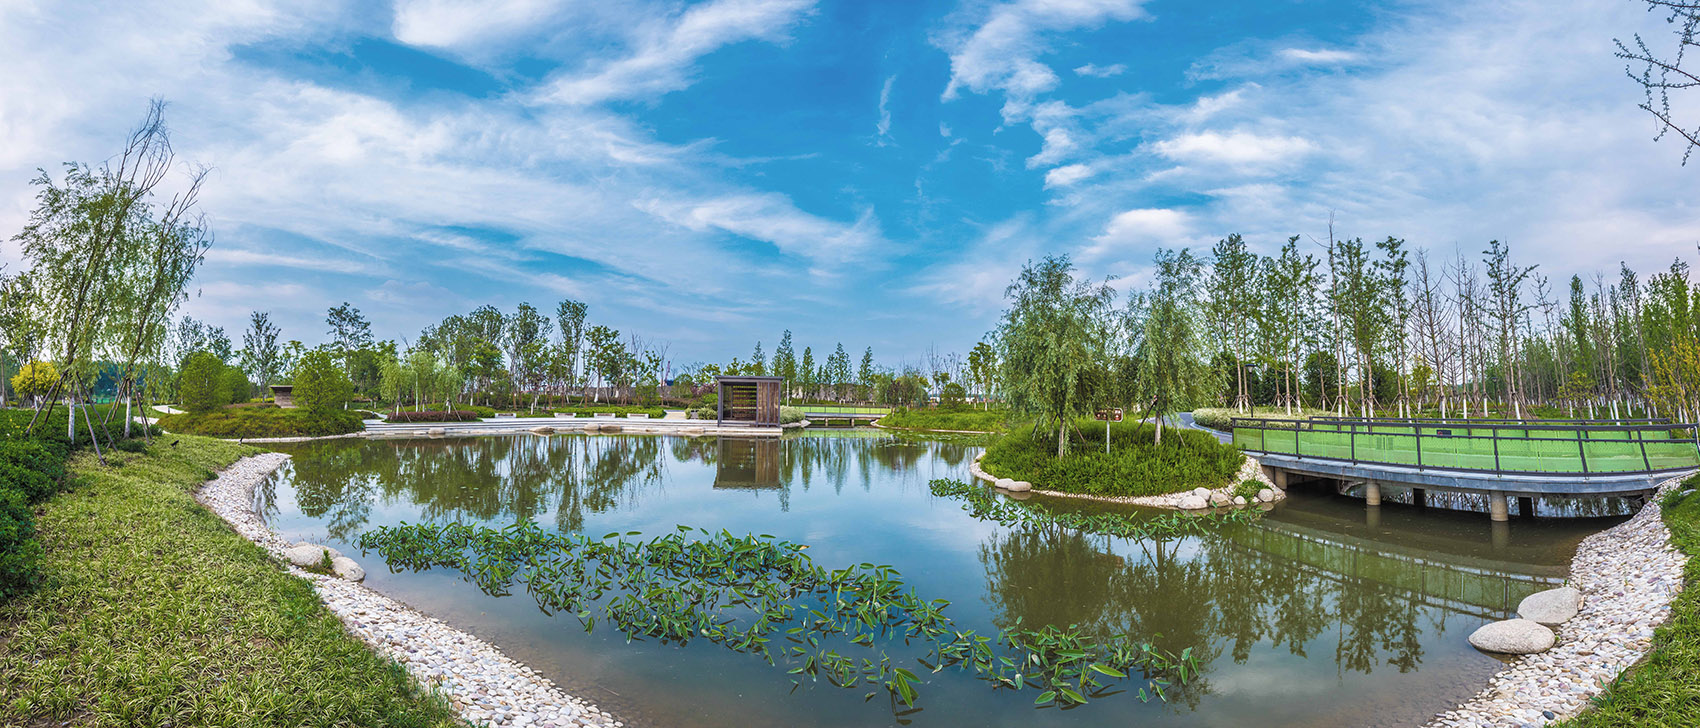 扬州的伟大复兴 &  廖家沟城市中央公园，扬州/迈向繁荣生态的后瘦西湖时代-100